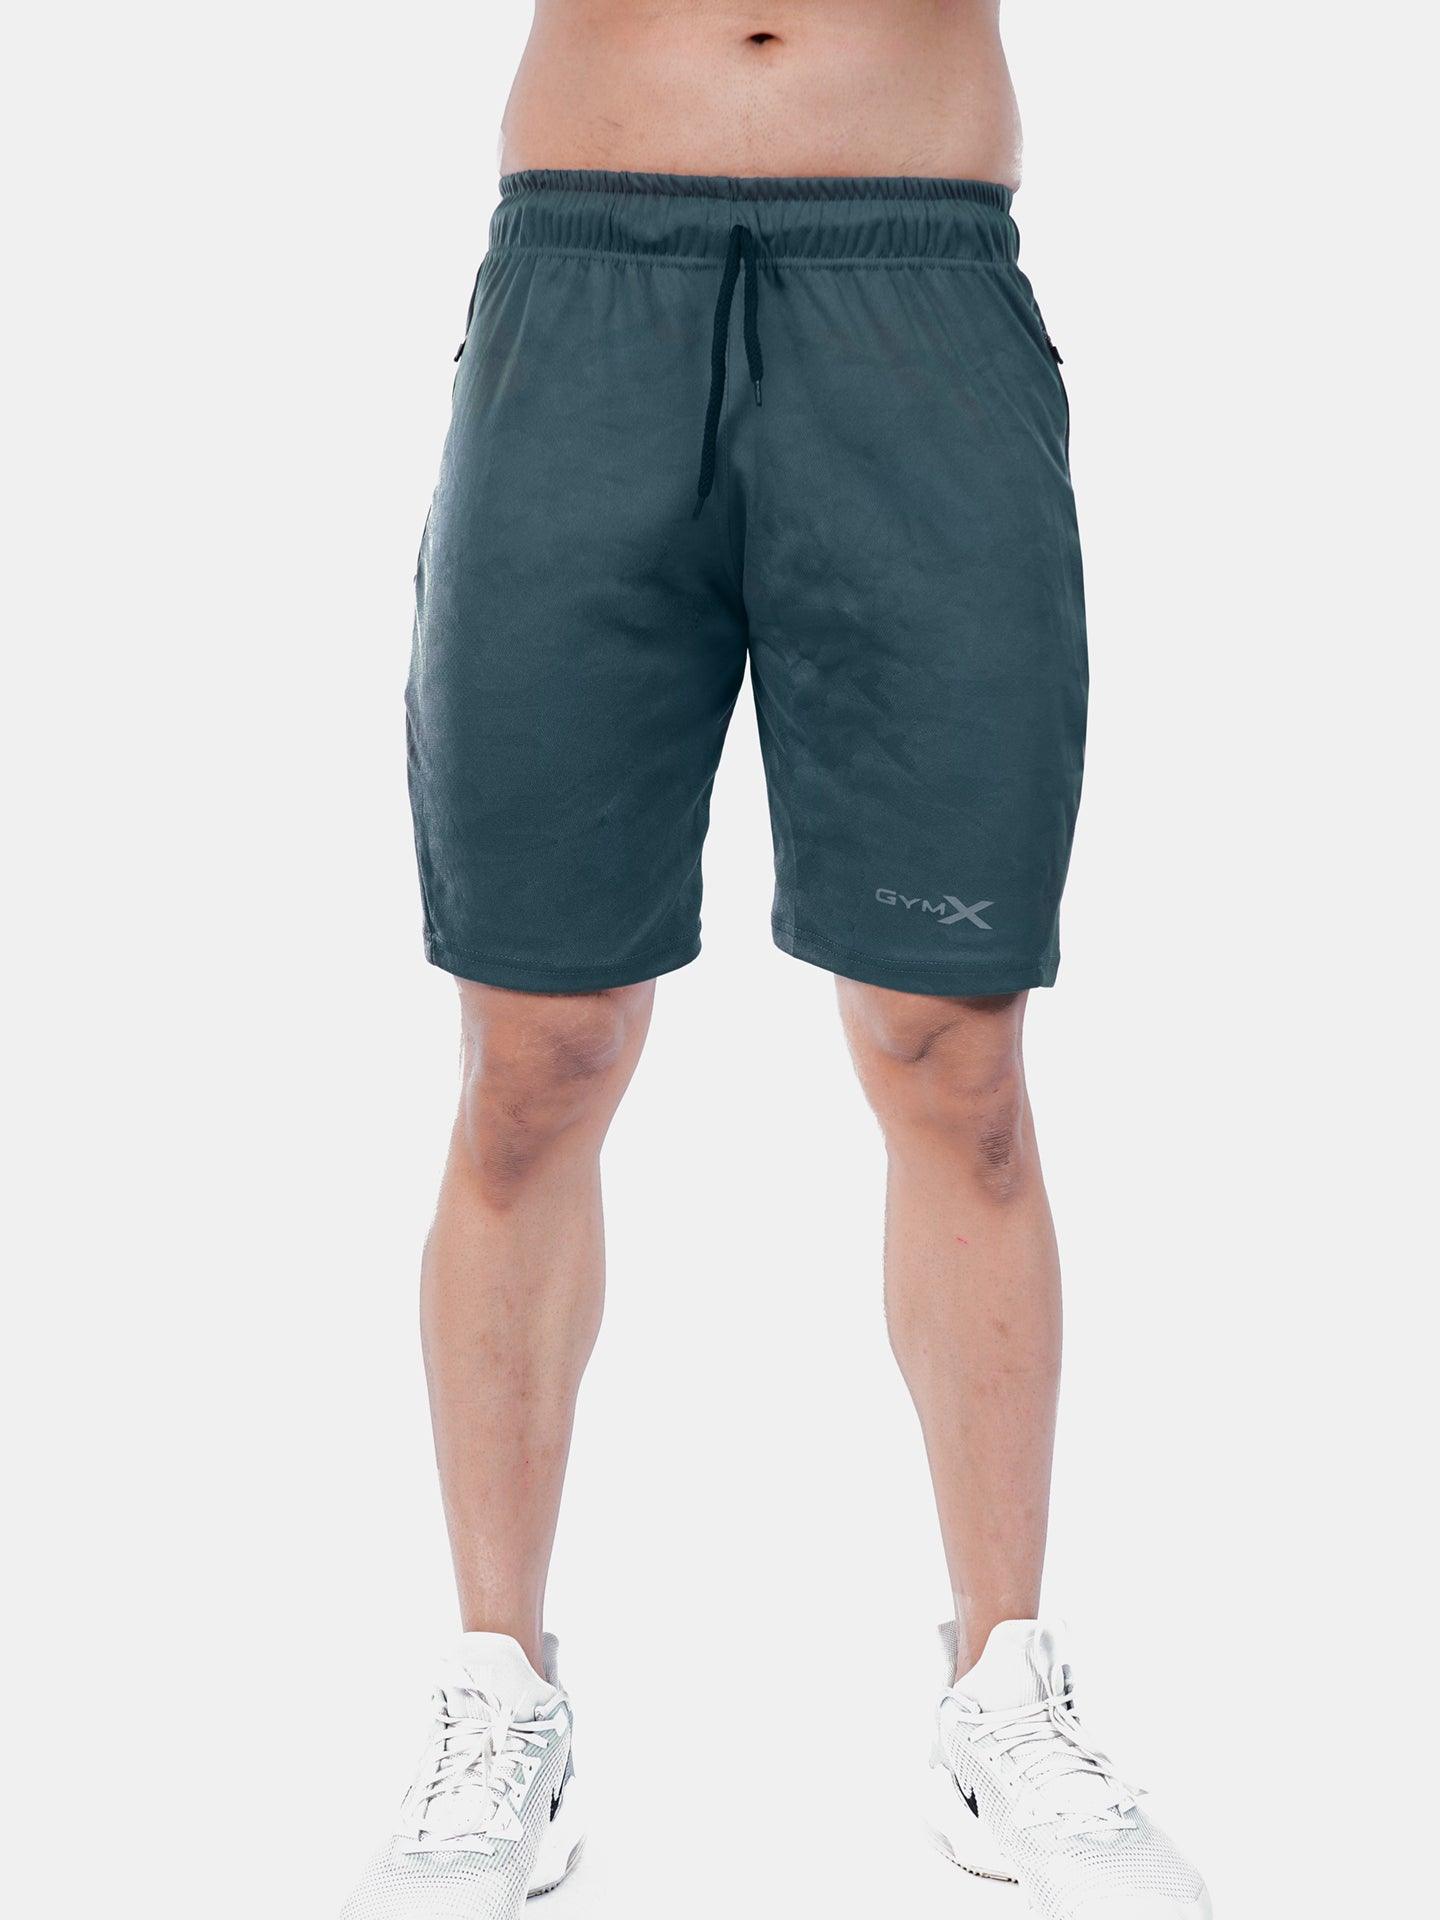 Jacquard Sea Grey Camo GymX Shorts - GymX